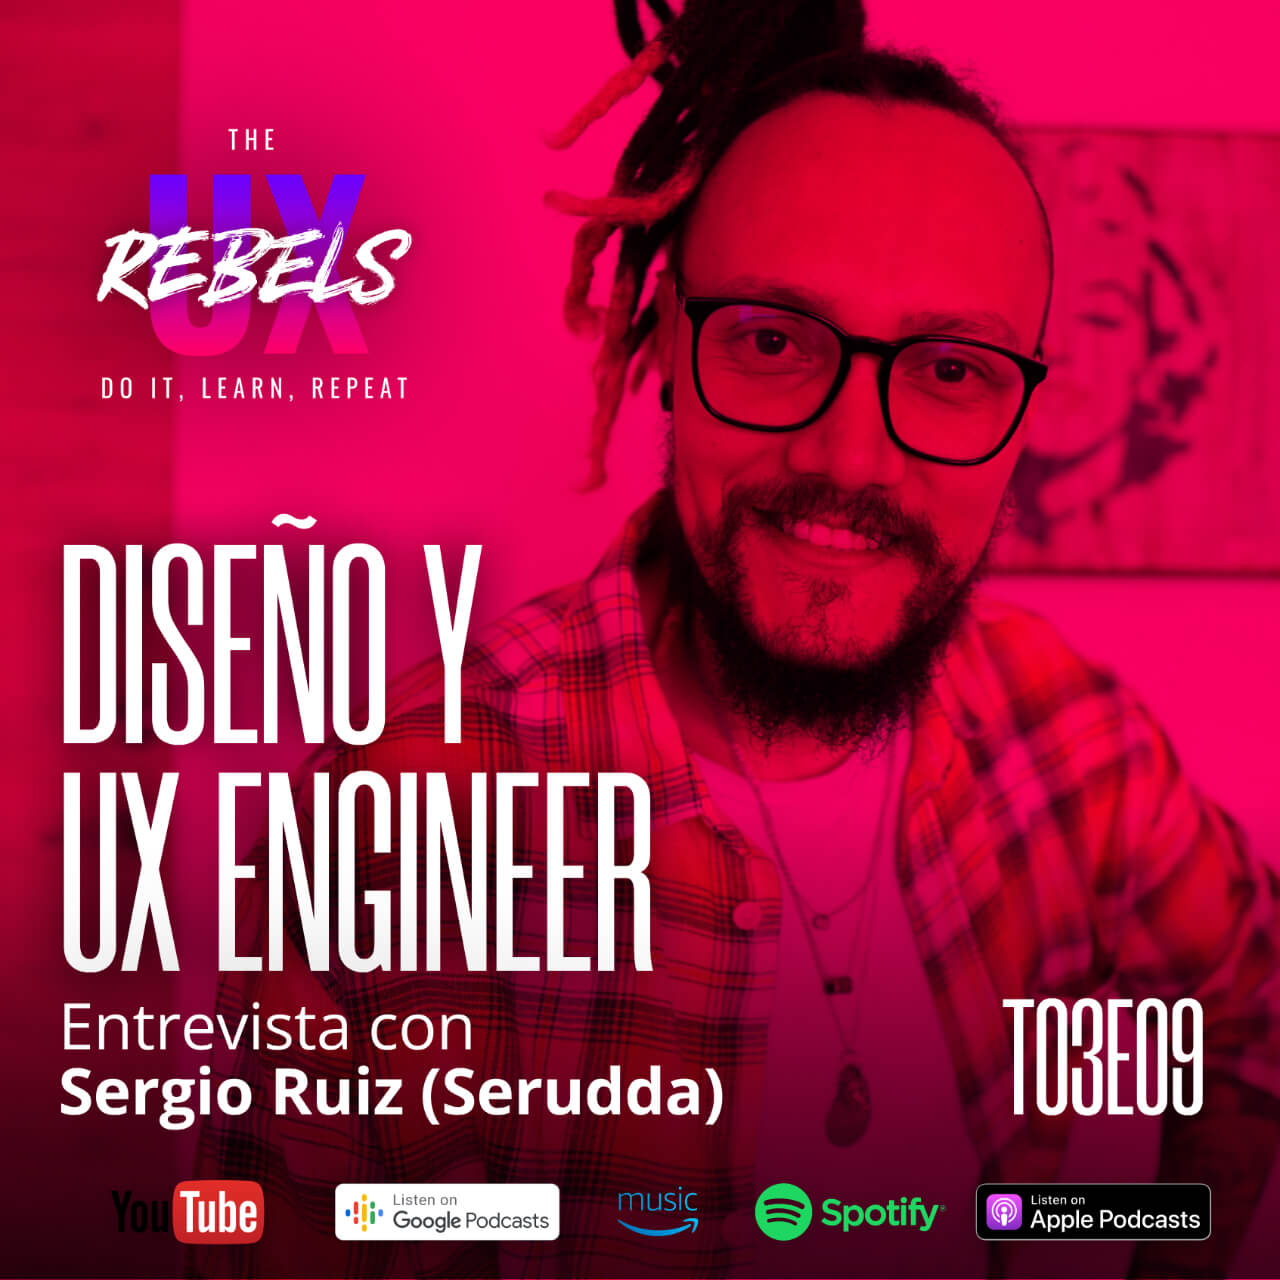 Escucha el episodio con Sergio Ruiz sobre el rol del UX Engineer